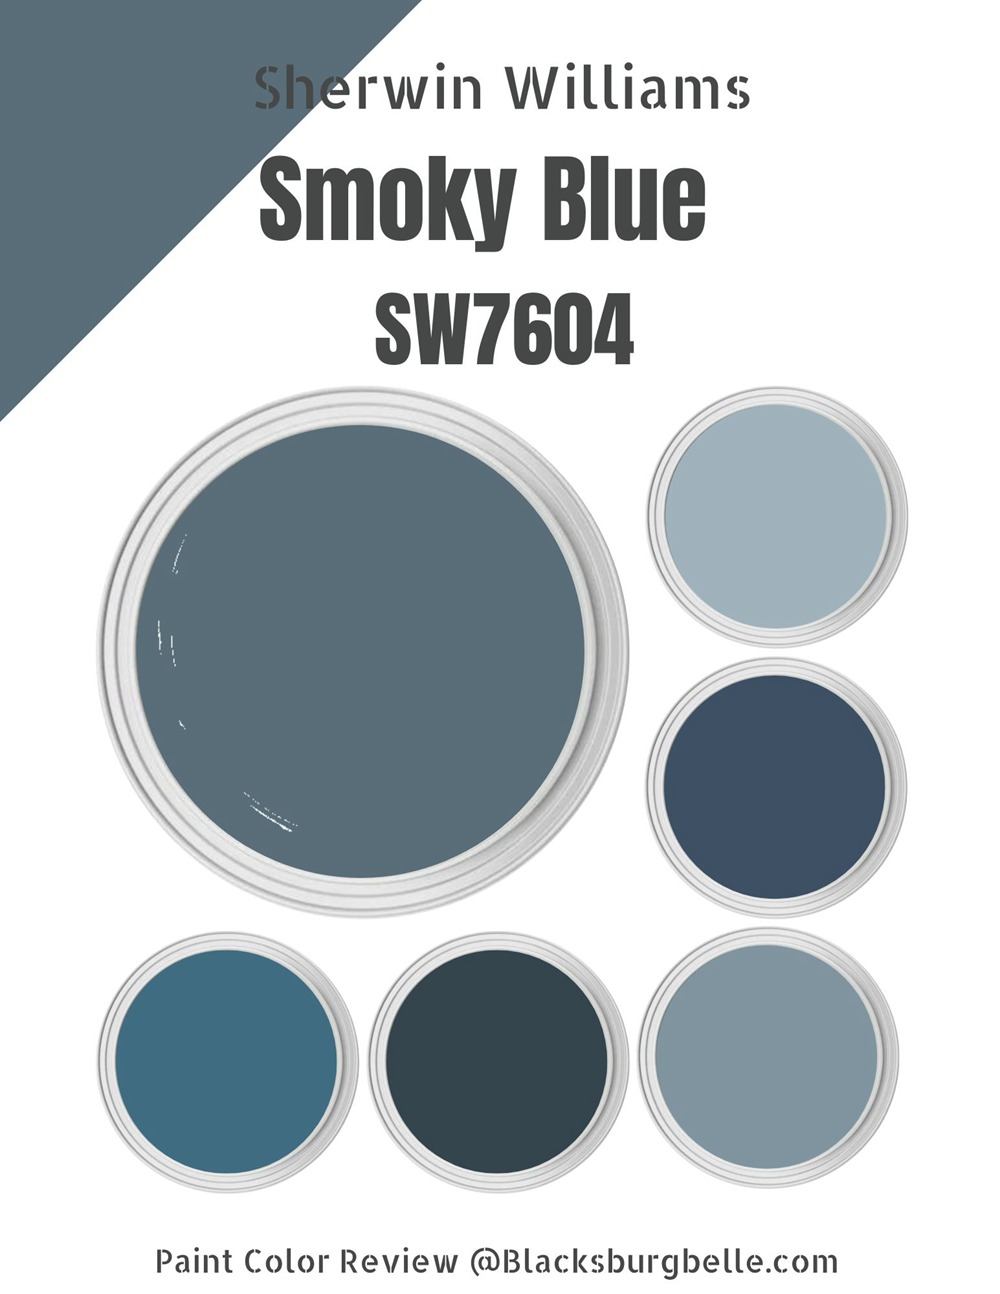 Cool Blue Home Paint Color Scheme Pre-selected Spa Colors 